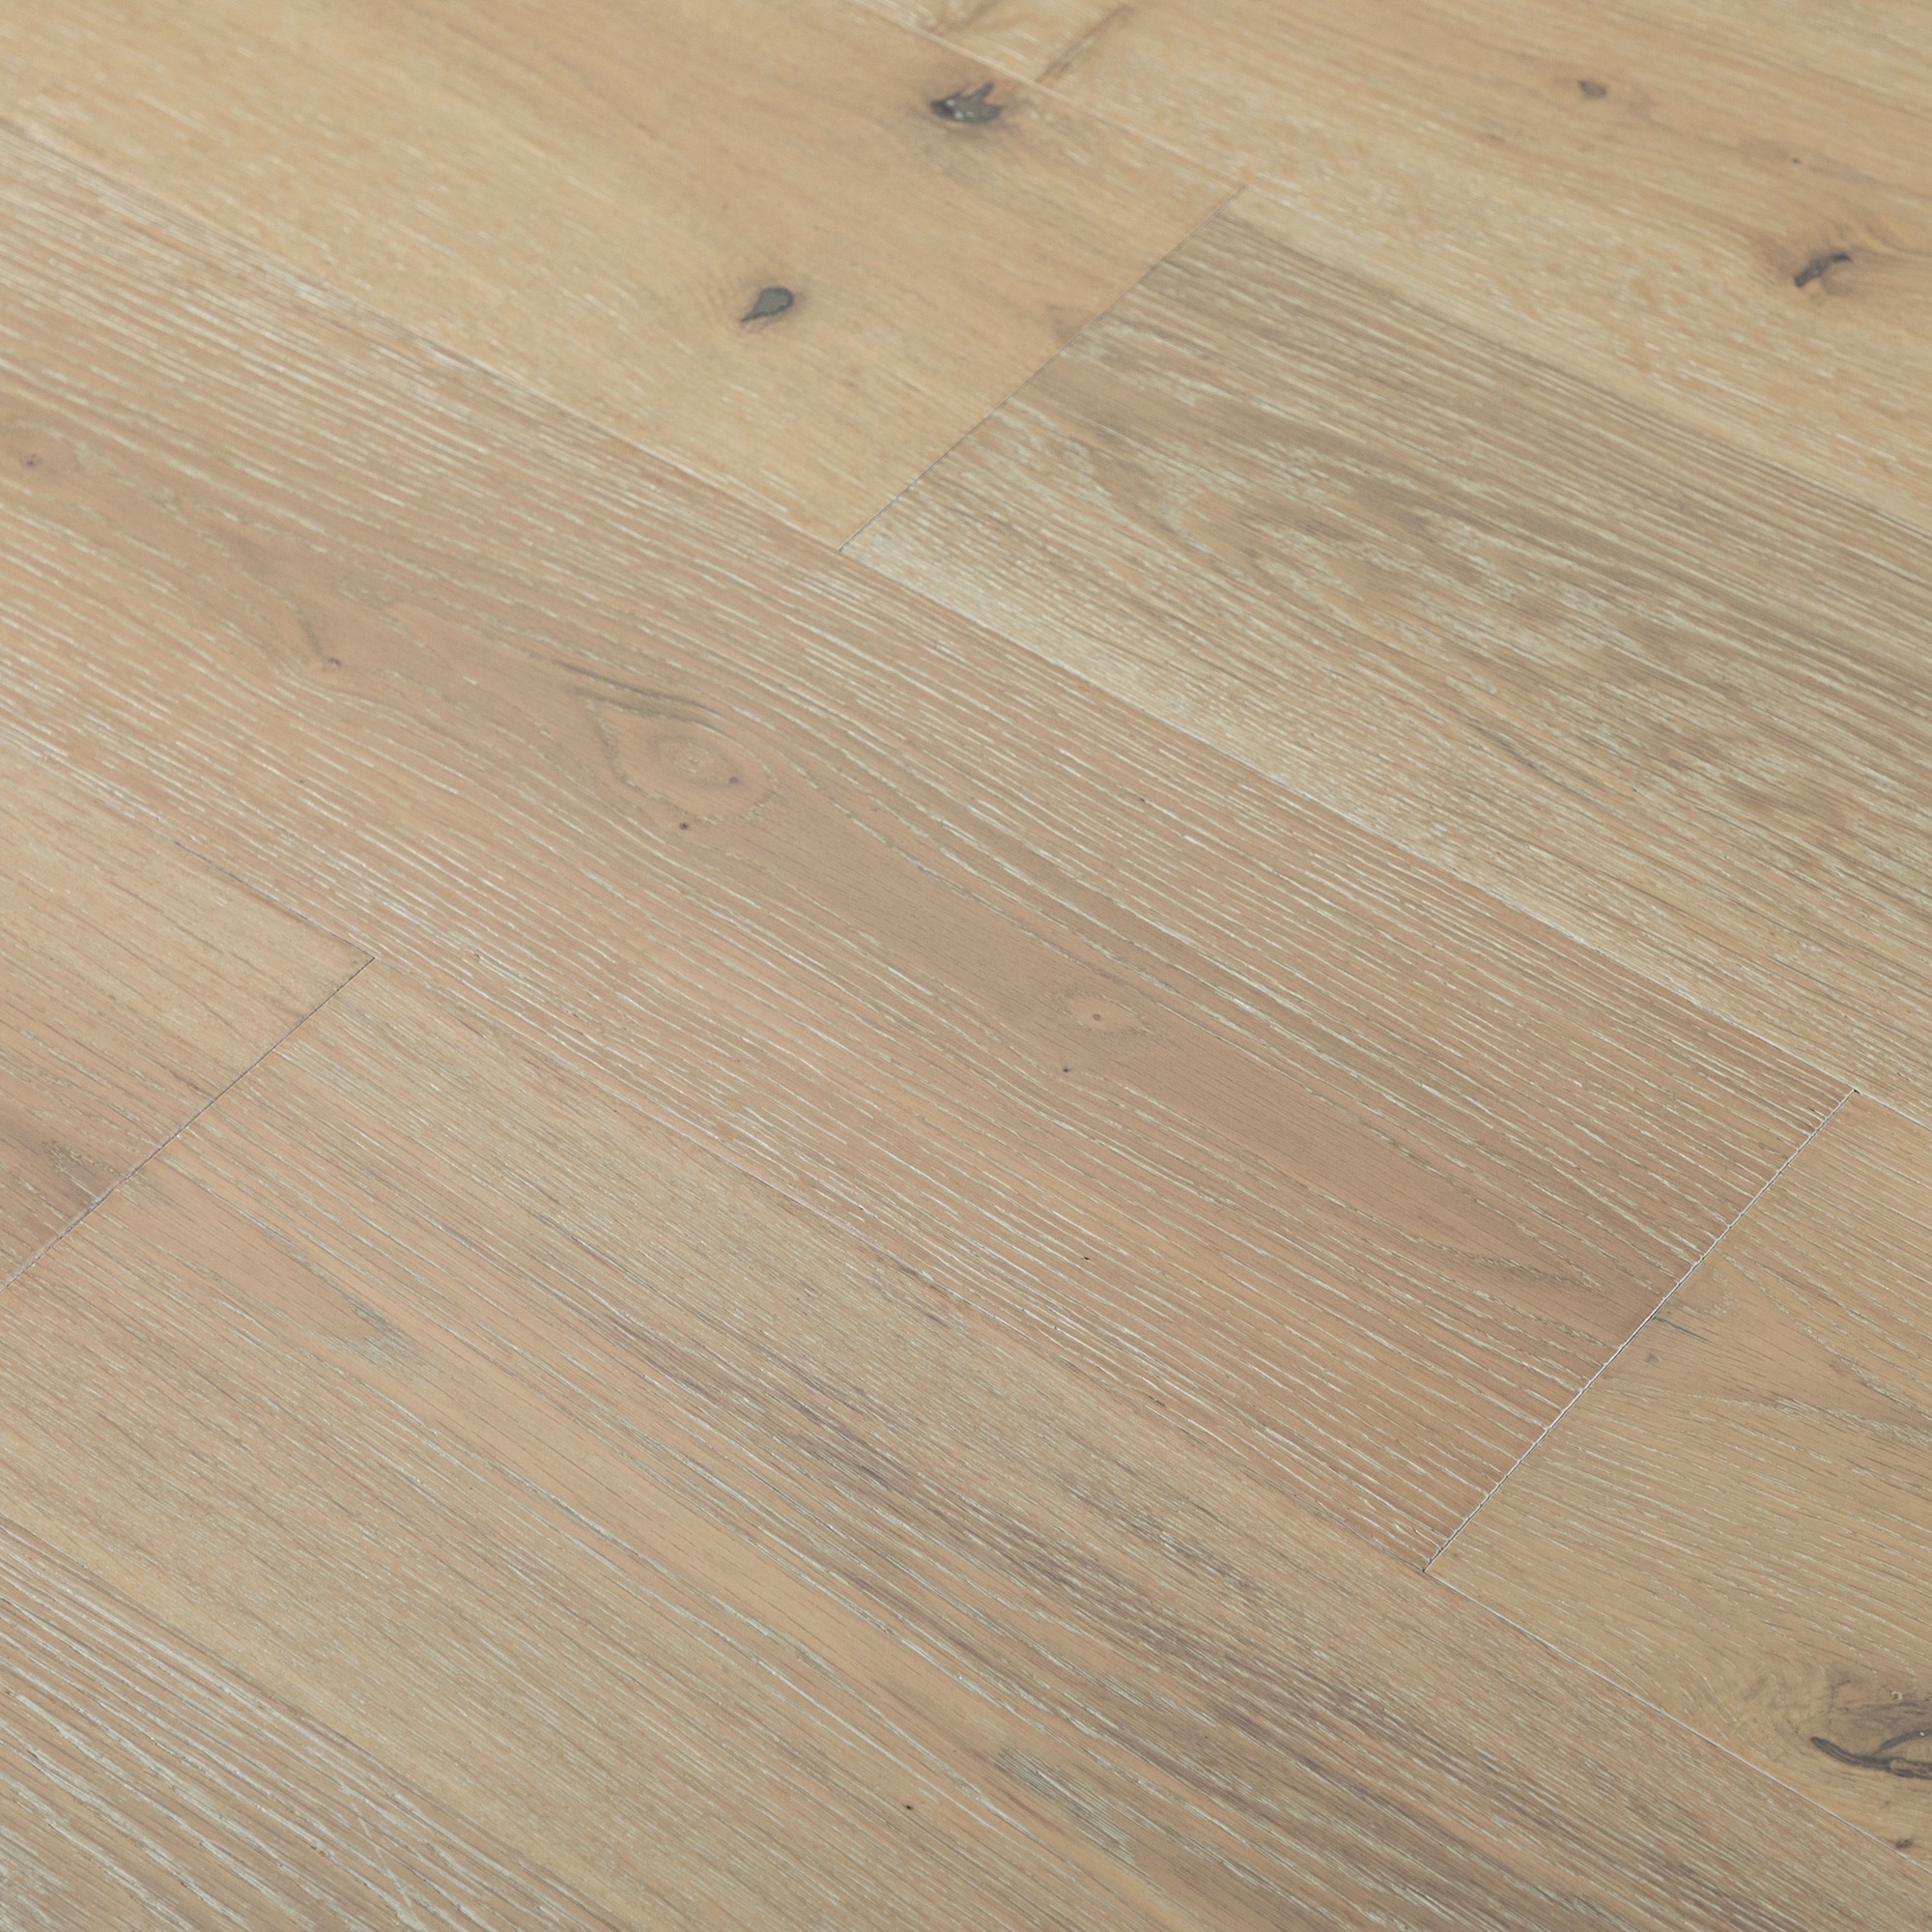 Natu Xl Spc Wood Prefinished French Oak, French White Oak Hardwood Floors